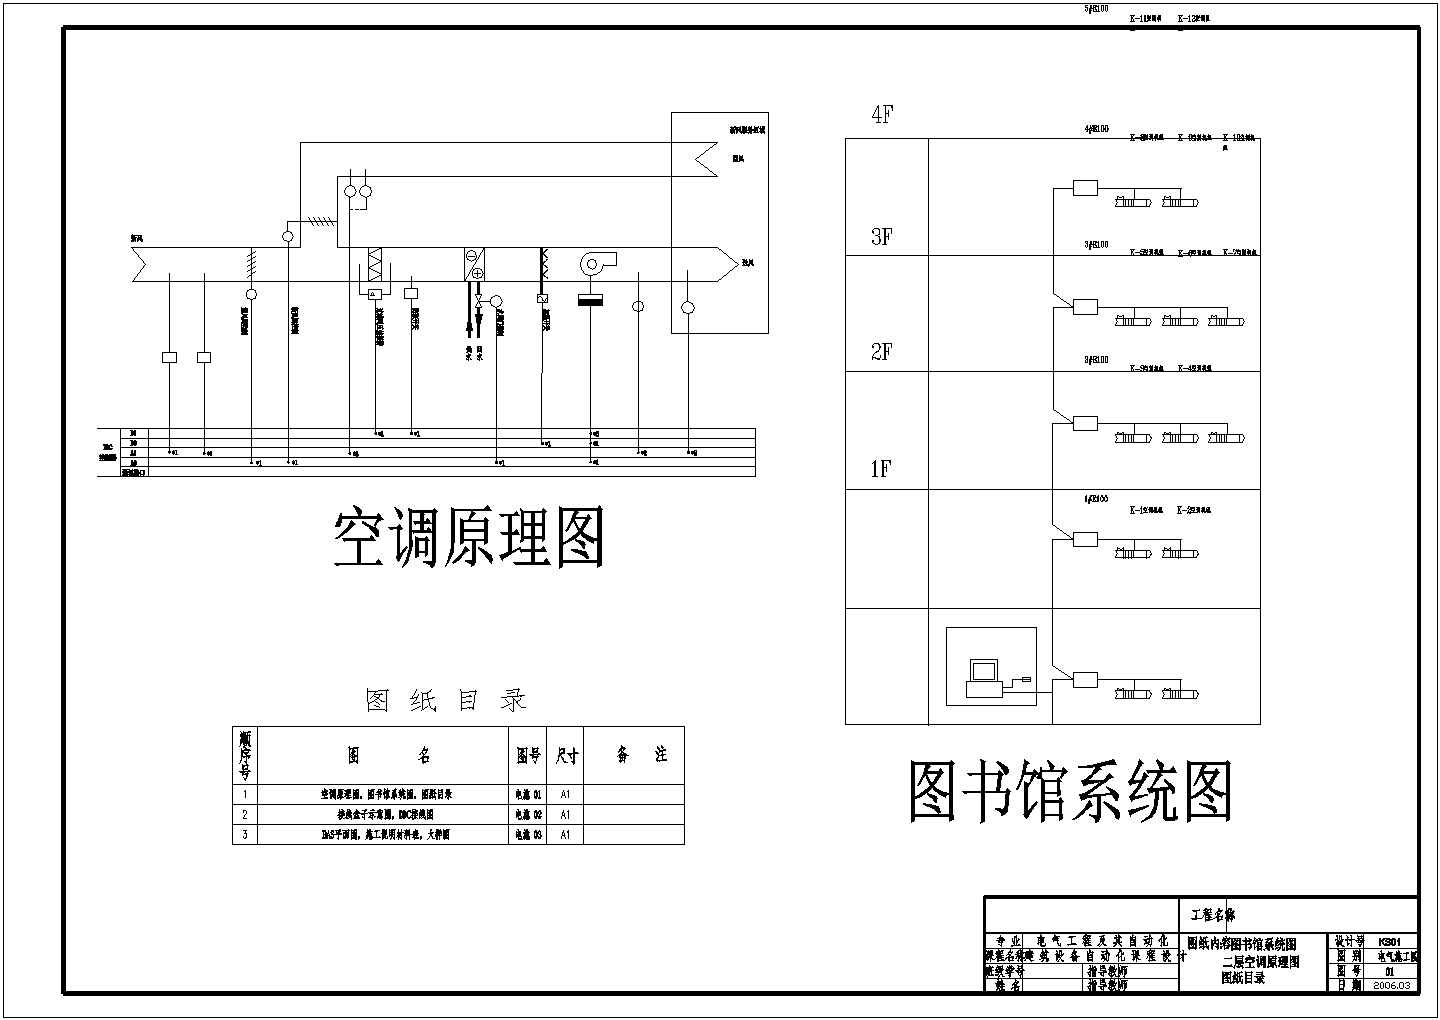 图书馆系统二层空调CAD原理图